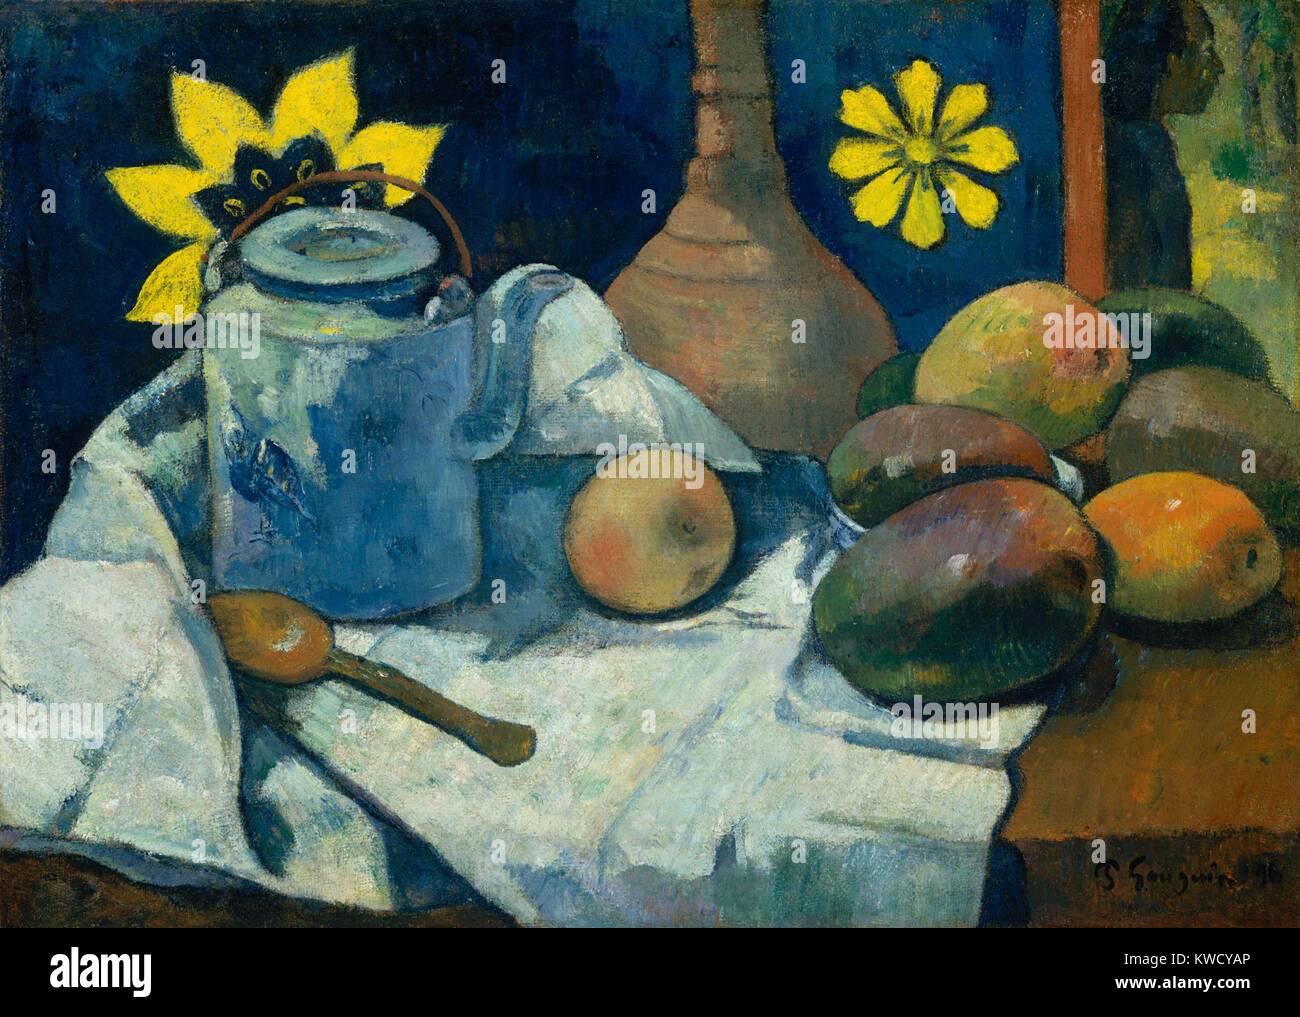 Nature morte à la théière et fruits, de Paul Gauguin, 1896, peinture à l'huile postimpressionniste français. La vie a toujours Gauguin mangues et un tissu imprimé de style tahitien en toile de fond. Il y a une figure dans l'angle supérieur droit, vu à travers une porte ou fenêtre (BSLOC 2017 5 34) Banque D'Images